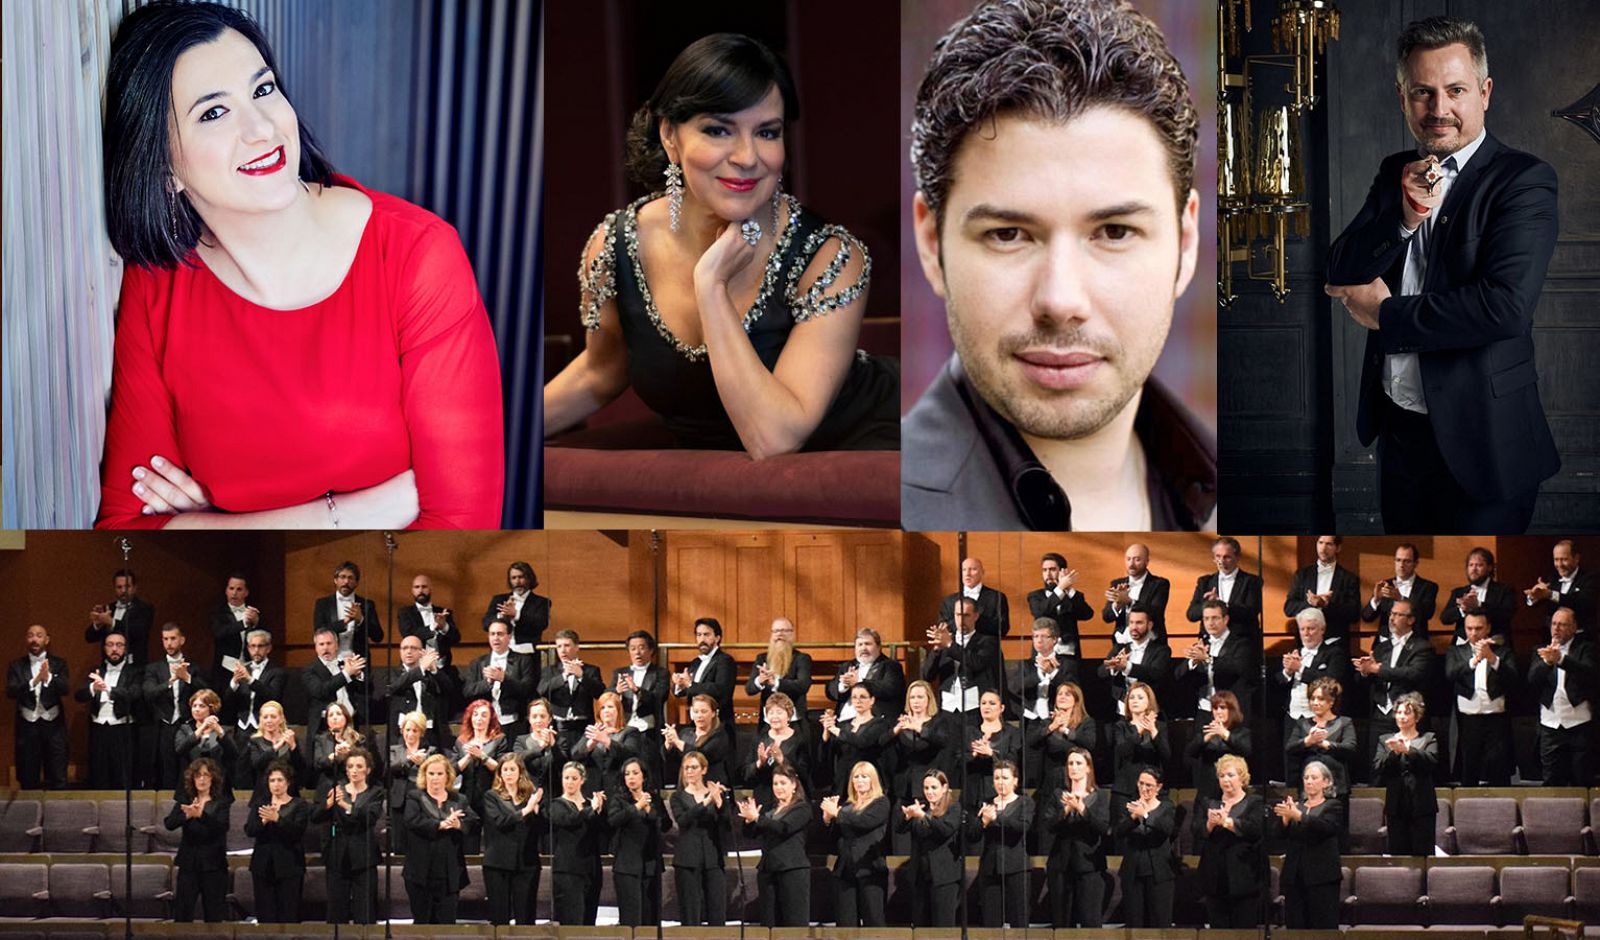 El r�quiem de Verdi esta semana, con la Orquesta y Coro RTVE